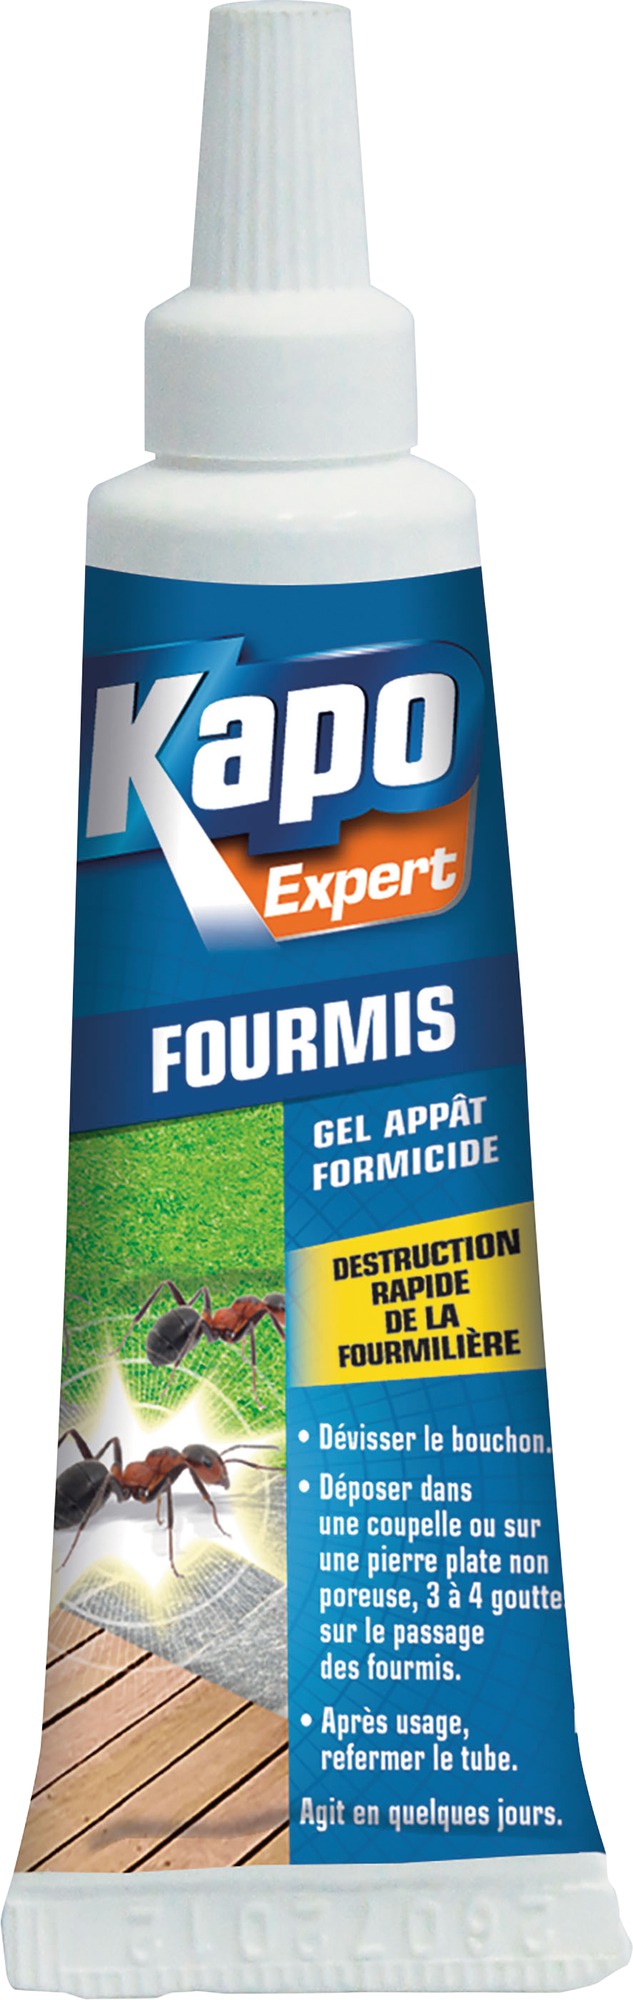 Gel appât formicide Kapo expert - 15 g